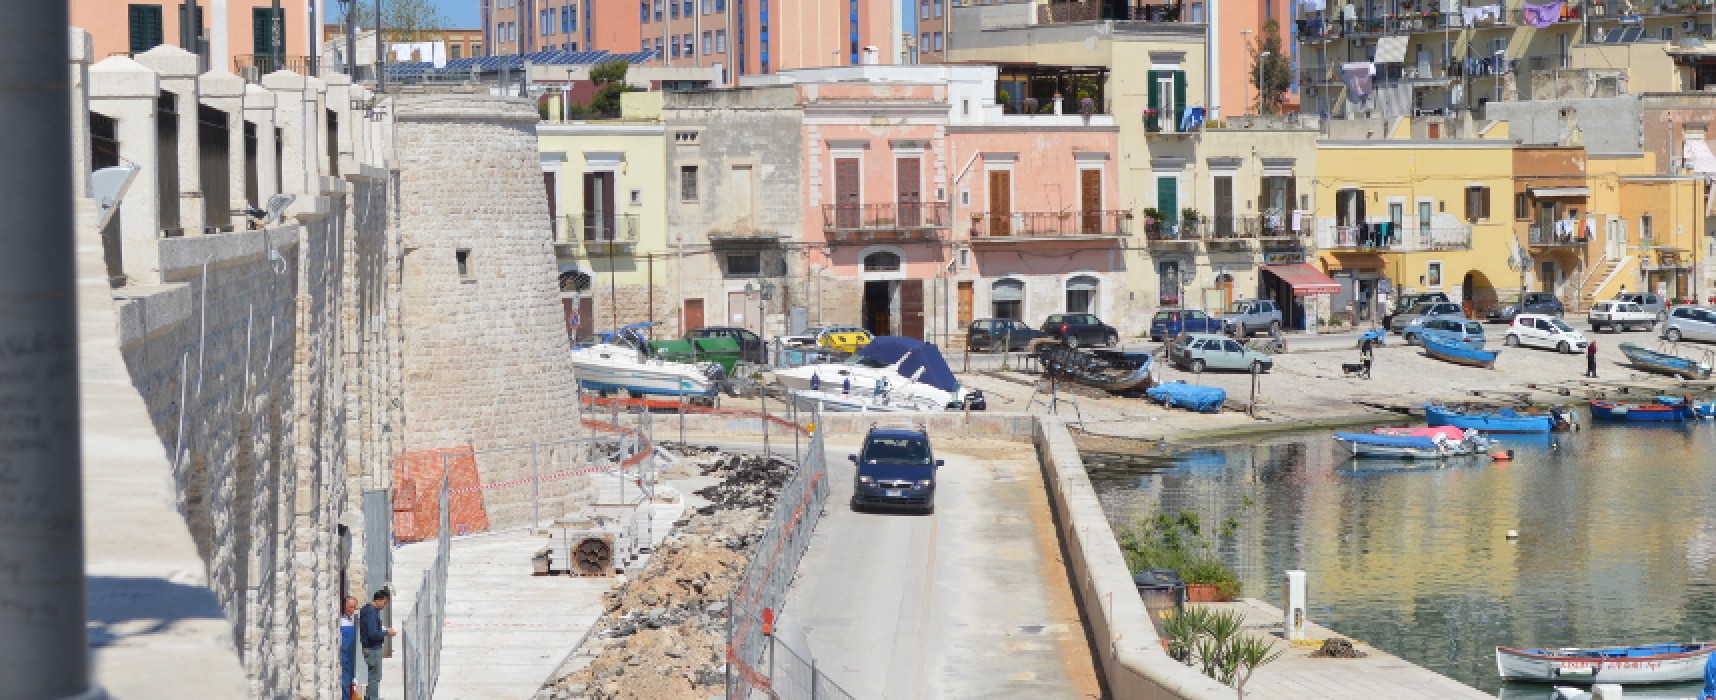 Waterfront, nuove disposizioni per il traffico veicolare su Via La Marina e Via Nazario Sauro